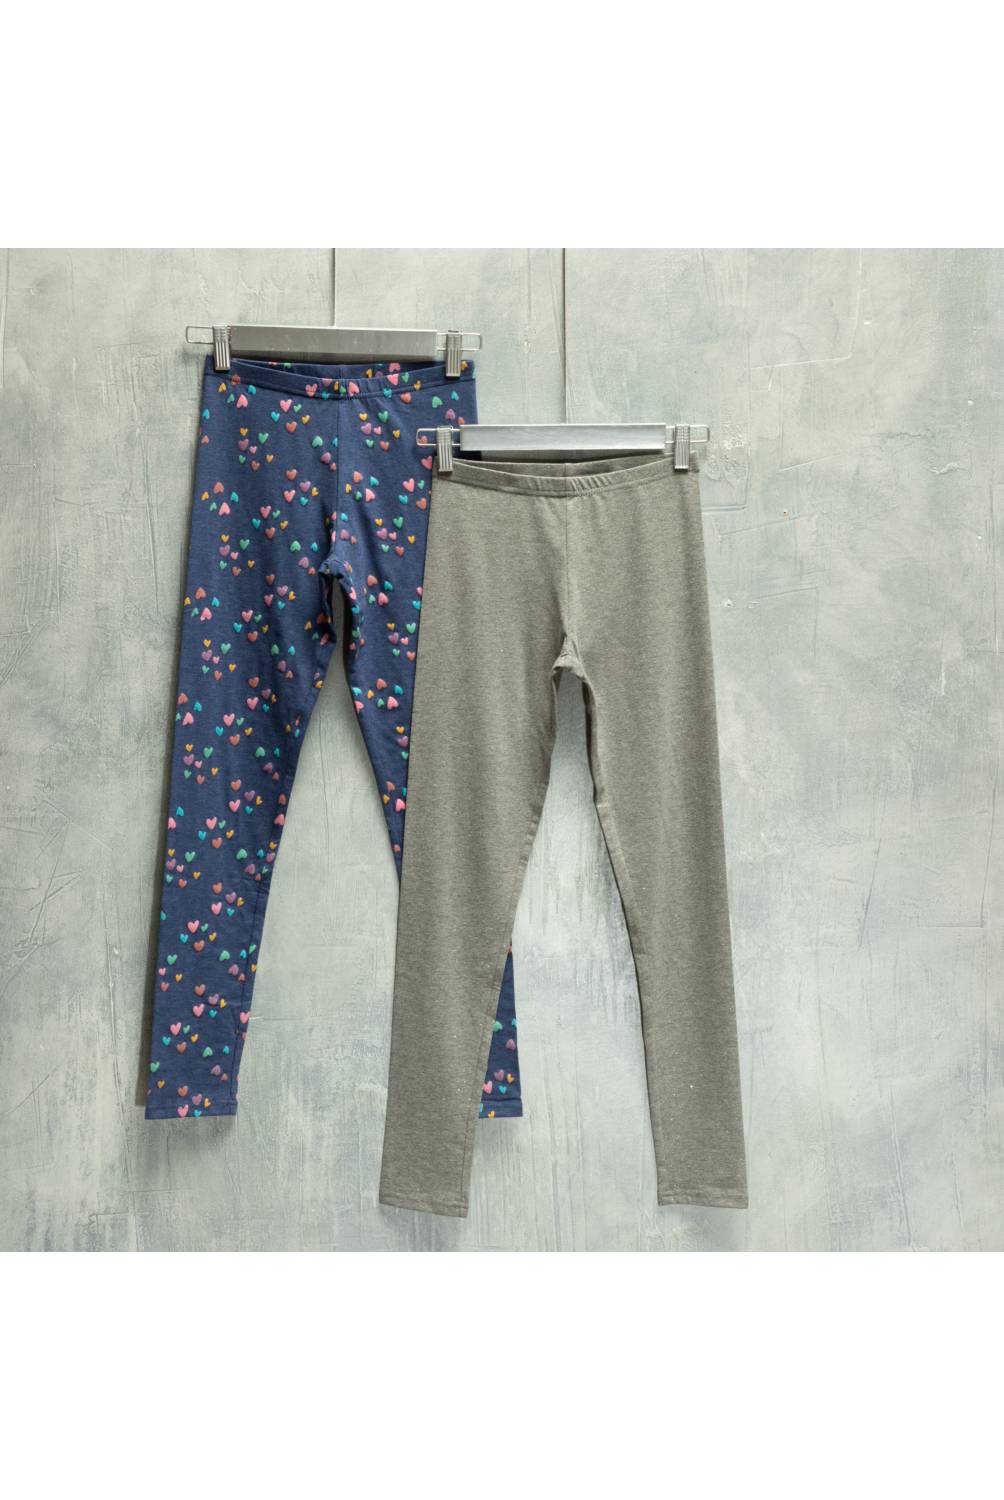 Pijama De Niño Algodón Azul Colloky (2 A 12 Años) - Compra Ahora